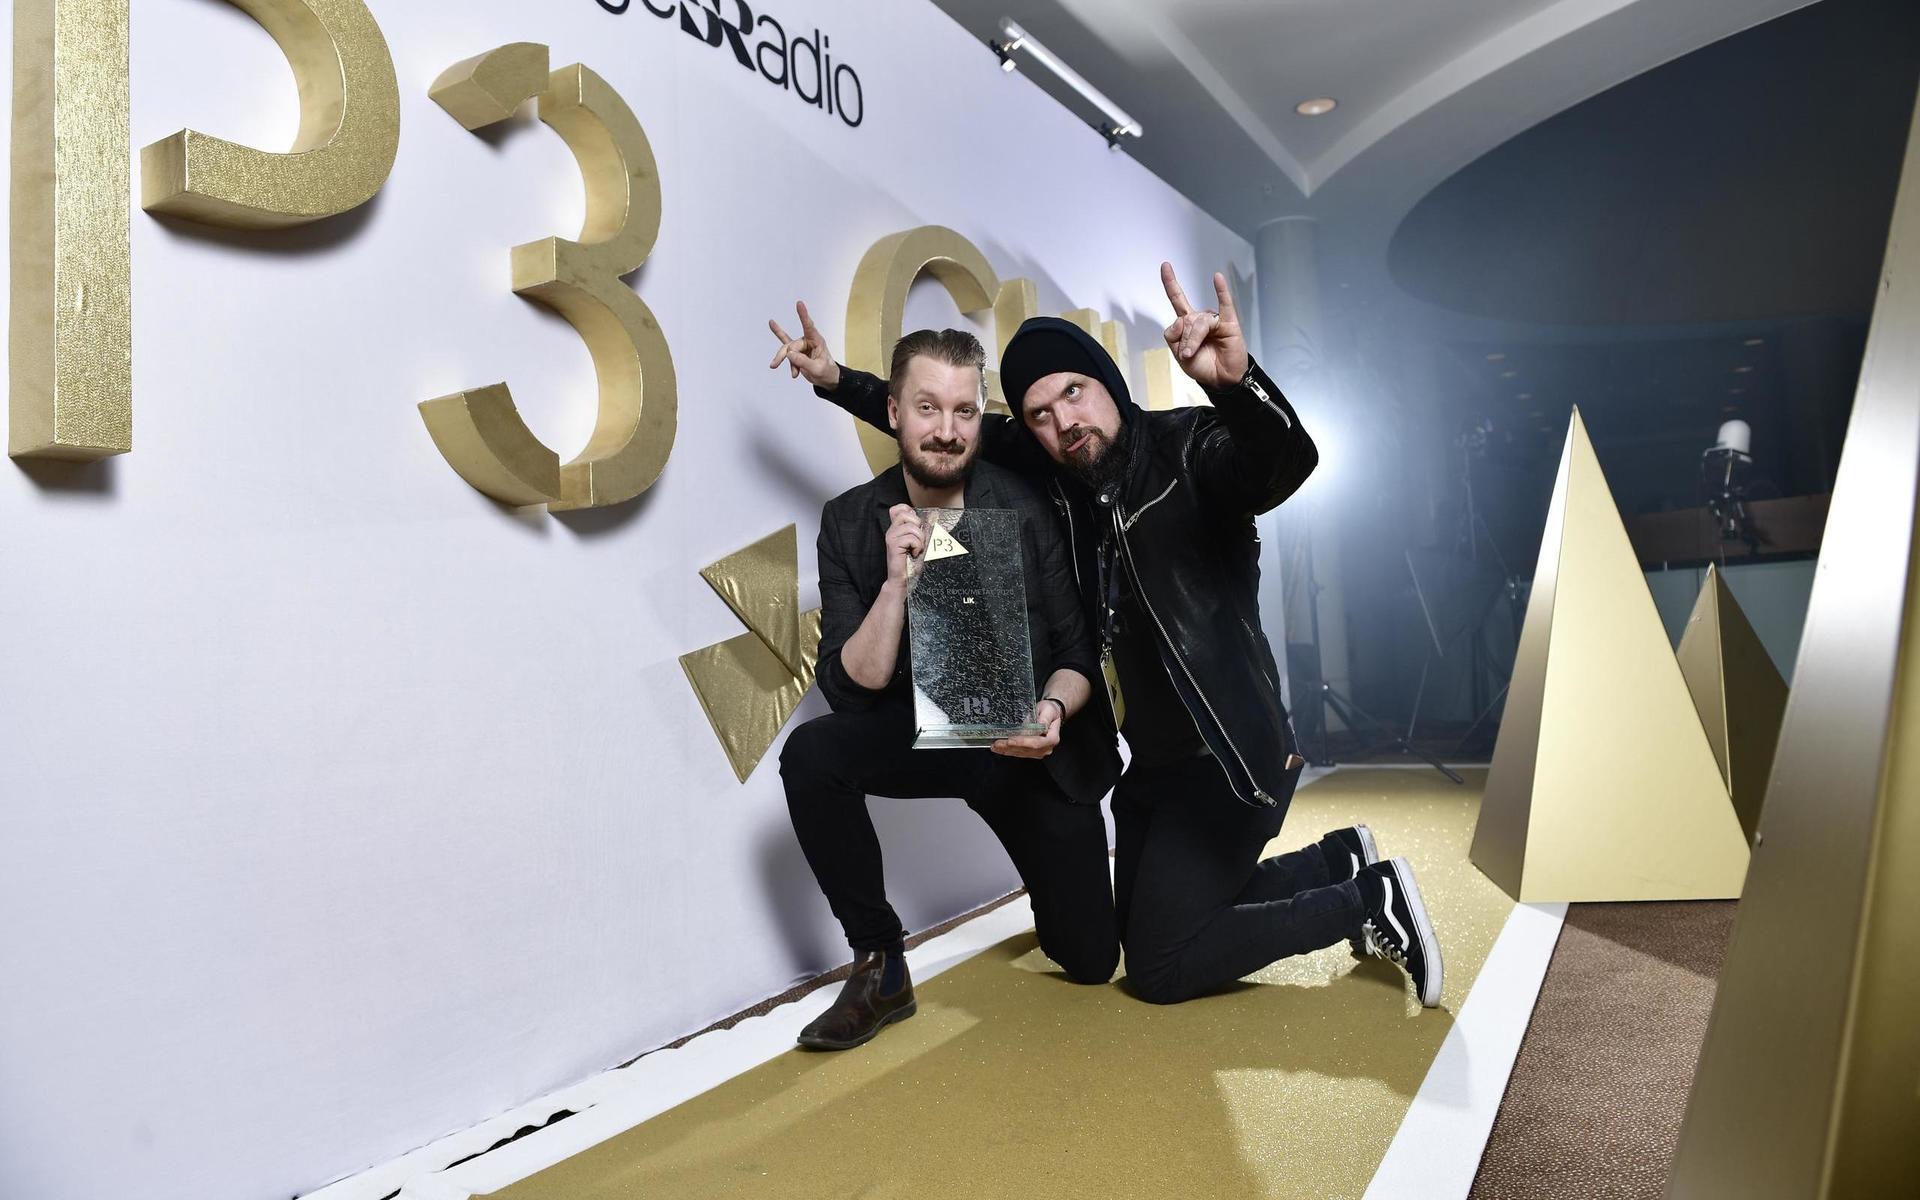 Bandet Lik, här Tomas Åkvi och Niklas Sandin, vann priset Årets ock/metal.